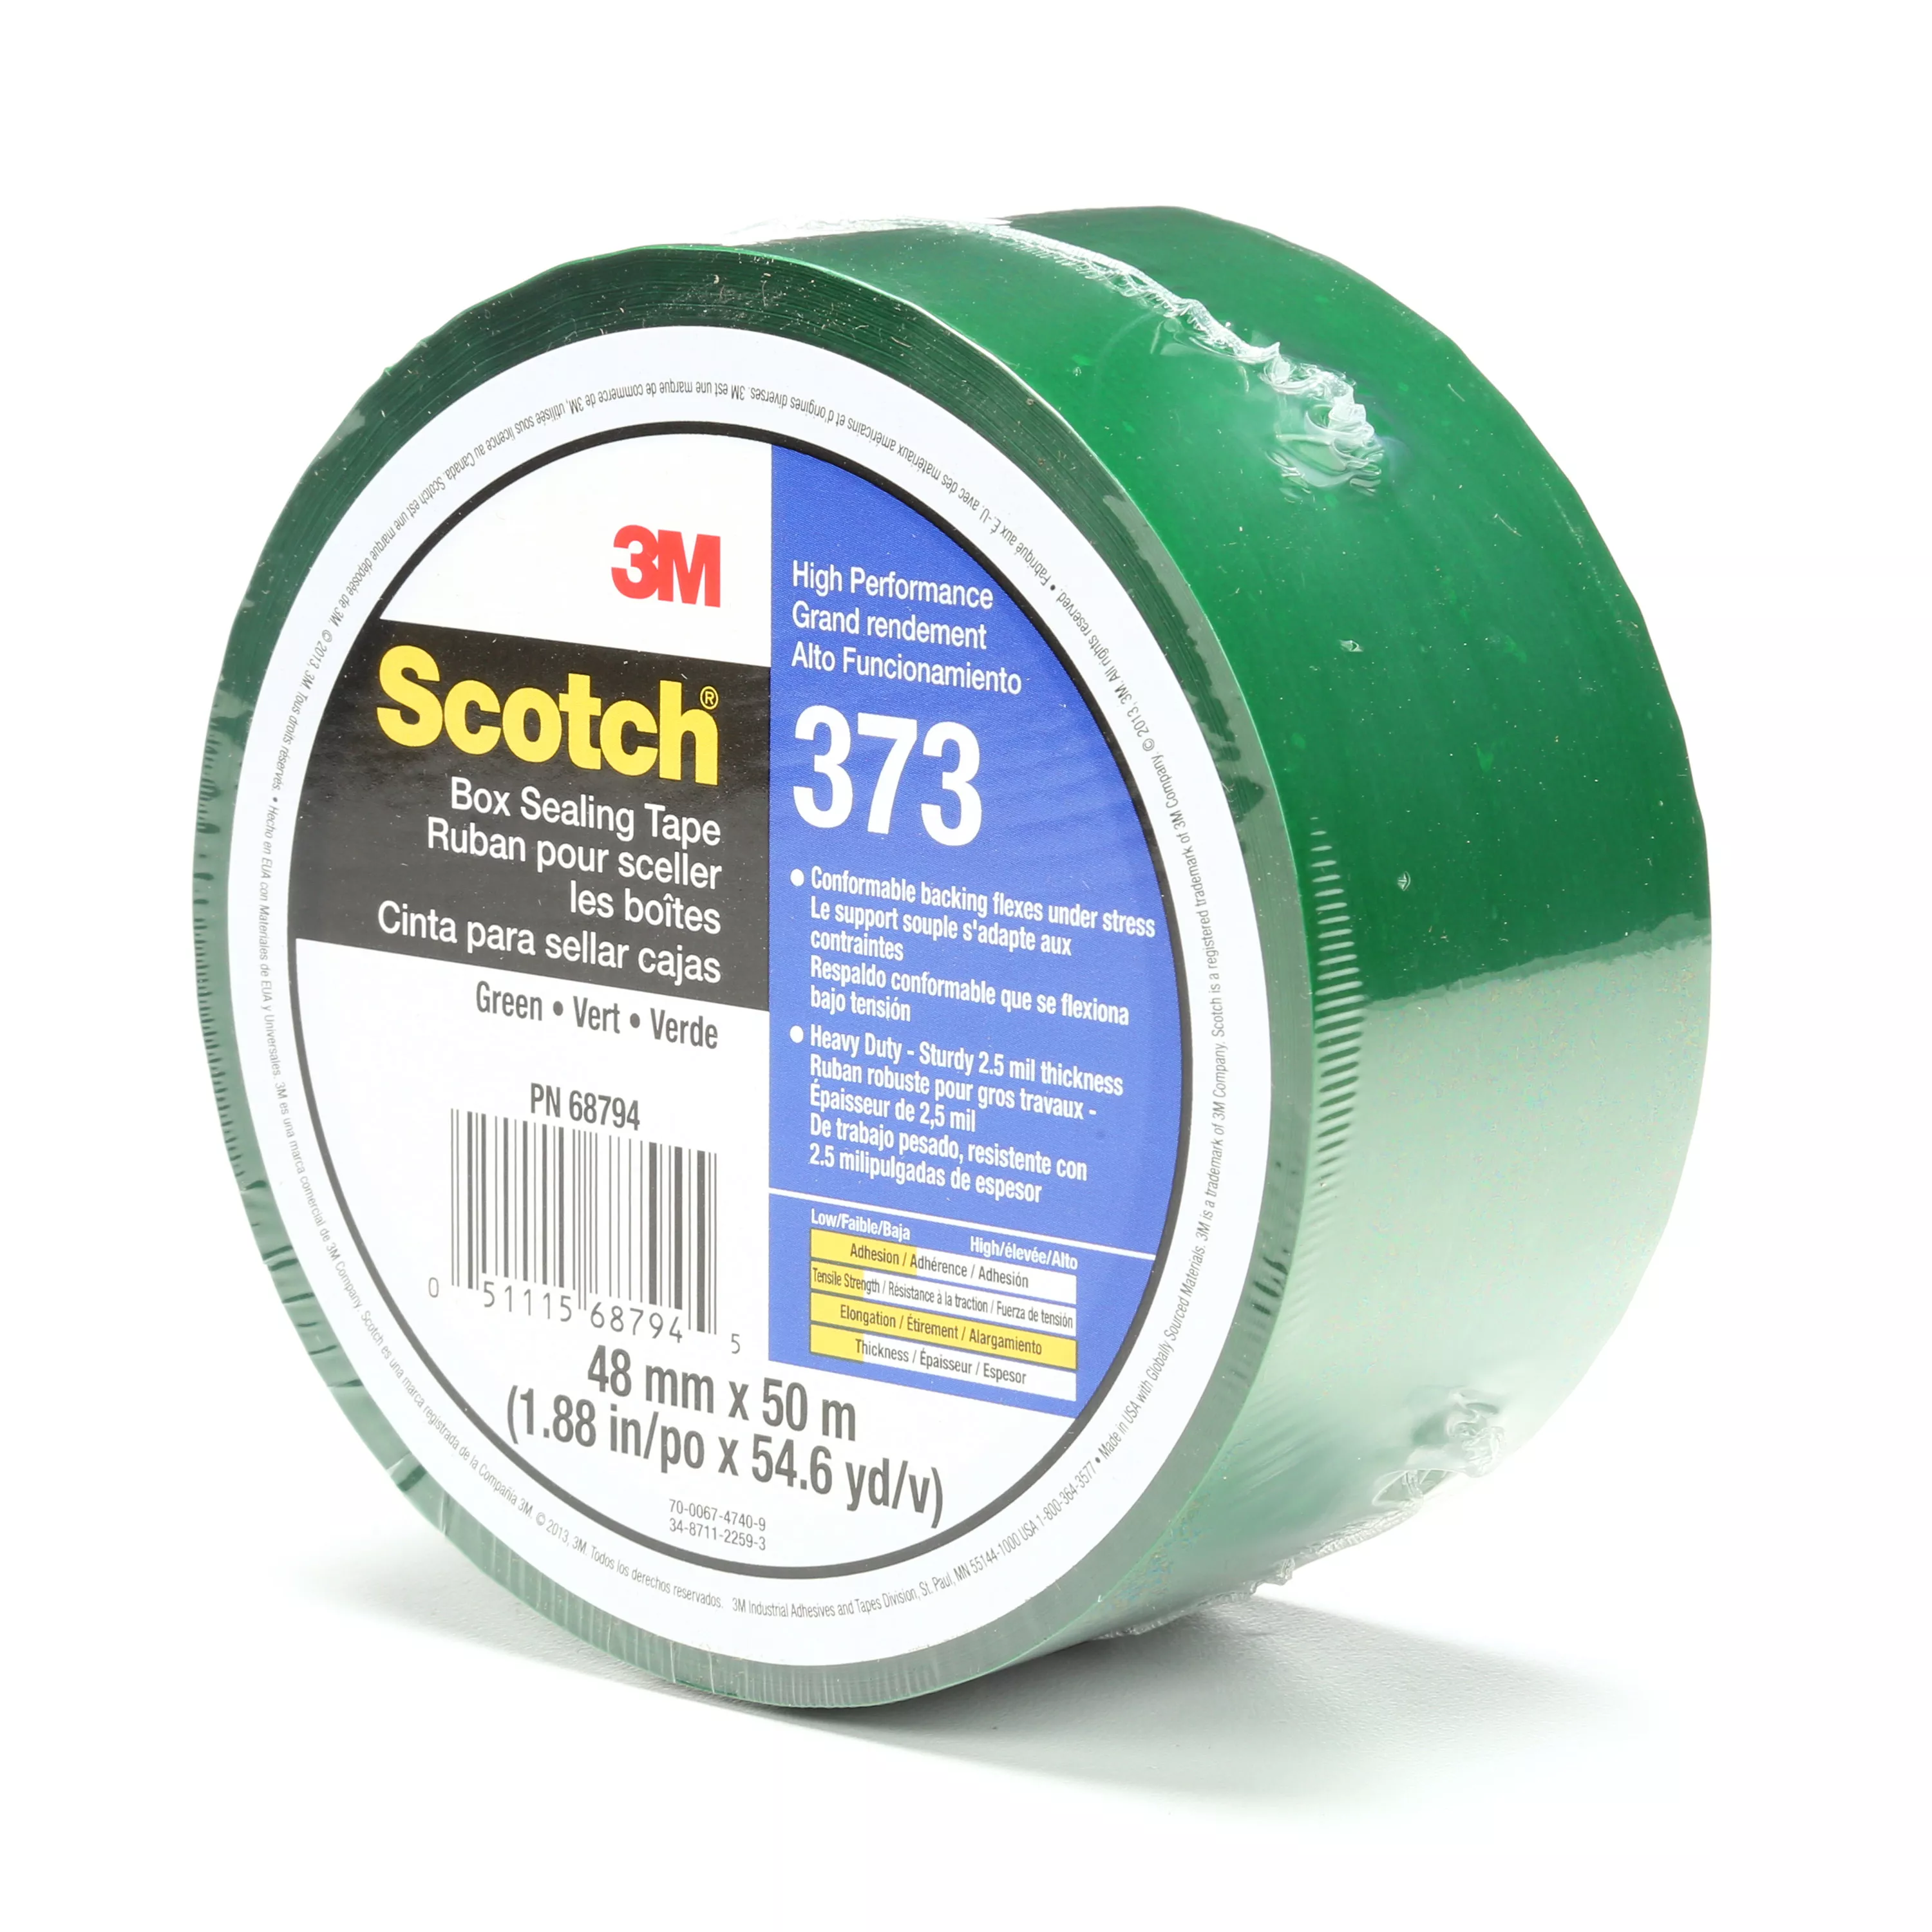 SKU 7010335127 | Scotch® Box Sealing Tape 373